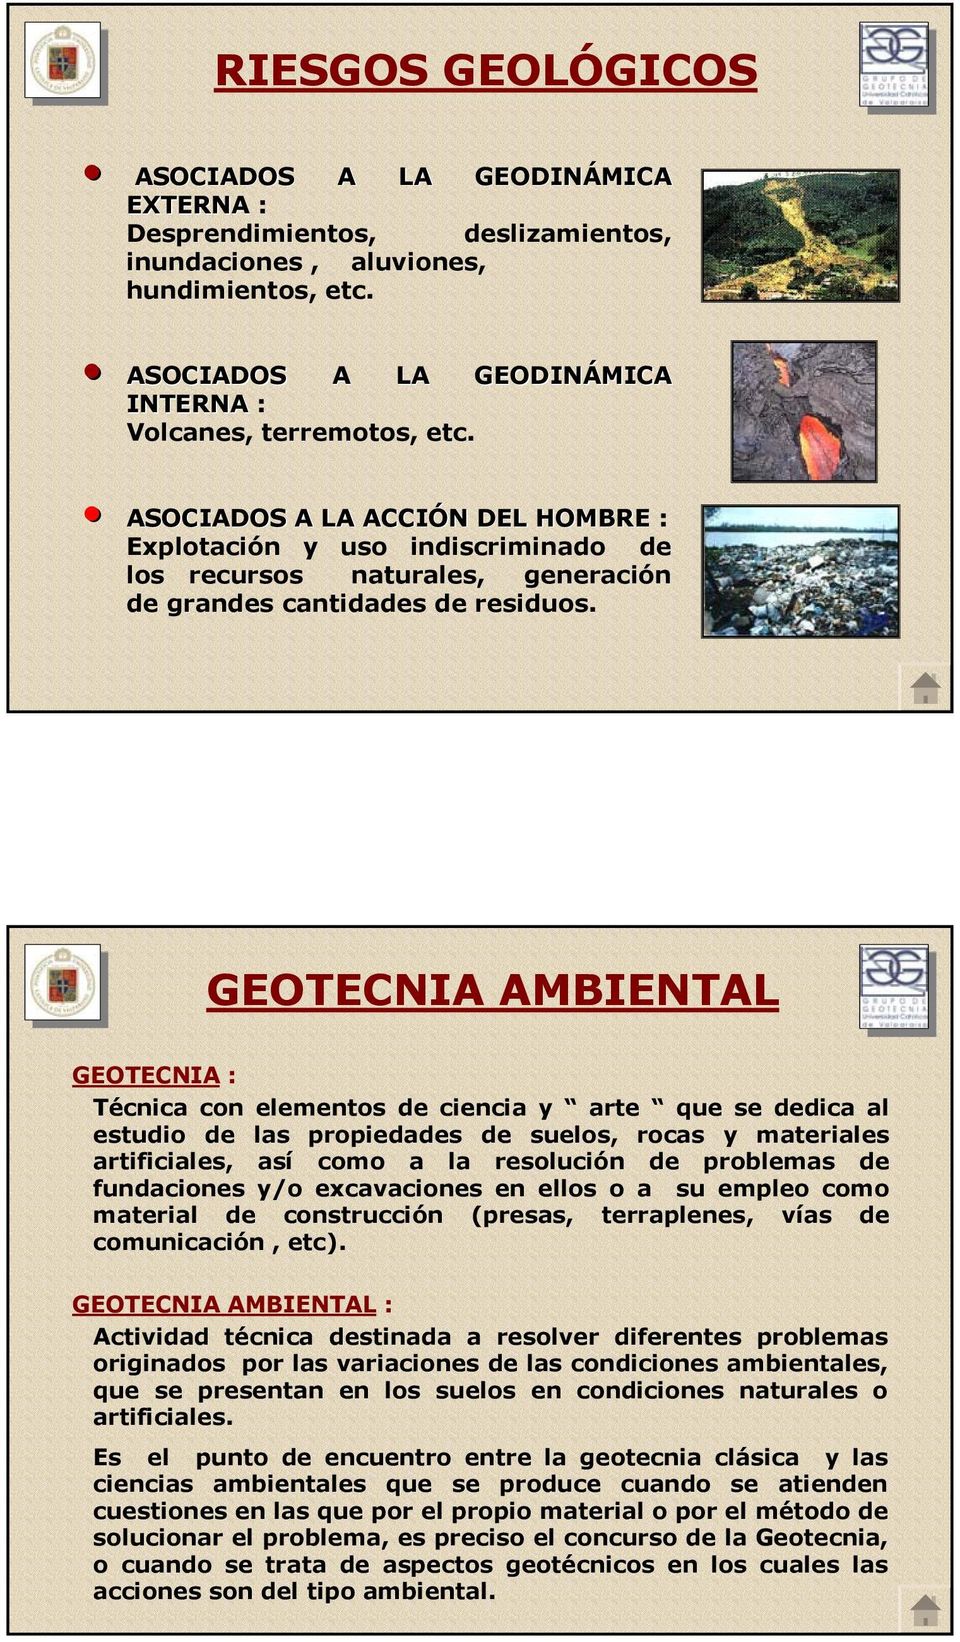 GEOTECNIA AMBIENTAL GEOTECNIA : Técnica con elementos de ciencia y arte que se dedica al estudio de las propiedades de suelos, rocas y materiales artificiales, así como a la resolución de problemas